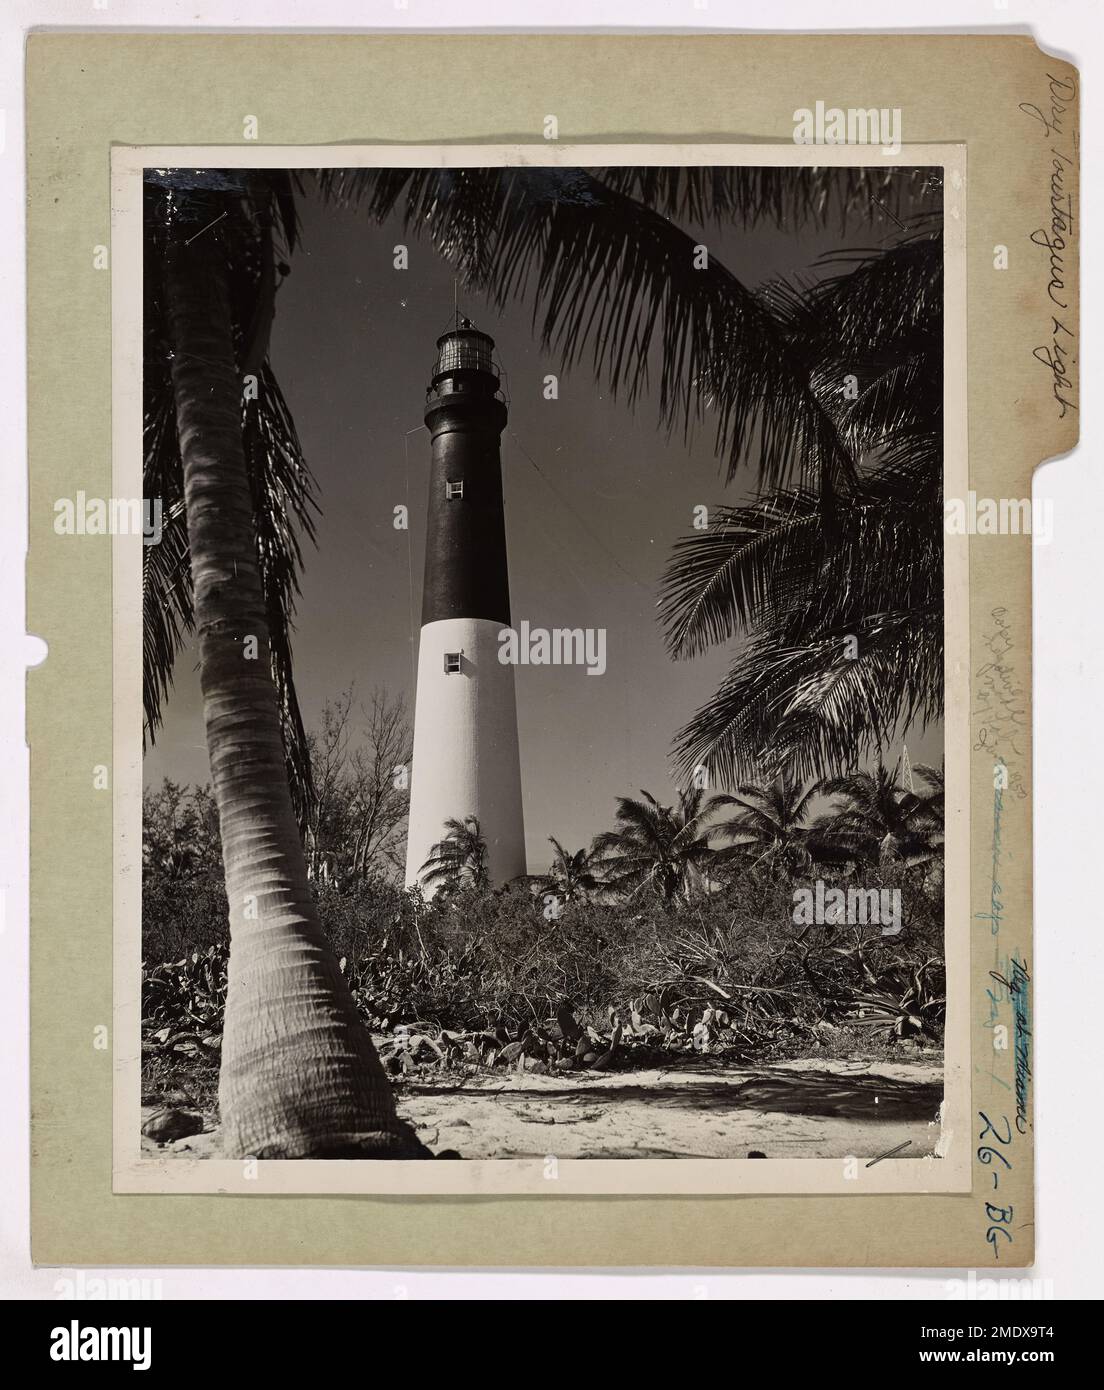 Trockene Tortugas Light auf Florida Riffs. Der Leuchtturm der Küstenwache am Loggerhead Key ist ein Leuchtturm der Küstenwache, der vor den heimtückischen Riffen Floridas am Eingang zum Golf von Mexiko warnt und seit 118 Jahren Stürmen und Kriegen standhält. Sie ist offiziell bekannt als Dry Tortugas Light Station und befindet sich etwa 65 Meilen westlich von Key West, Florida. [Florida]. Während des Hurrikans vom Oktober 1944 wurde das Anemometer weggetragen, nachdem eine windgeschwindigkeit von 120 km/h registriert wurde. Er ist 151 Meter hoch, hat eine Lichtausleuchtung von 18 Meilen von 1.500.000 Kerzenlichtern. Das 1826 erbaute Licht ist o Stockfoto